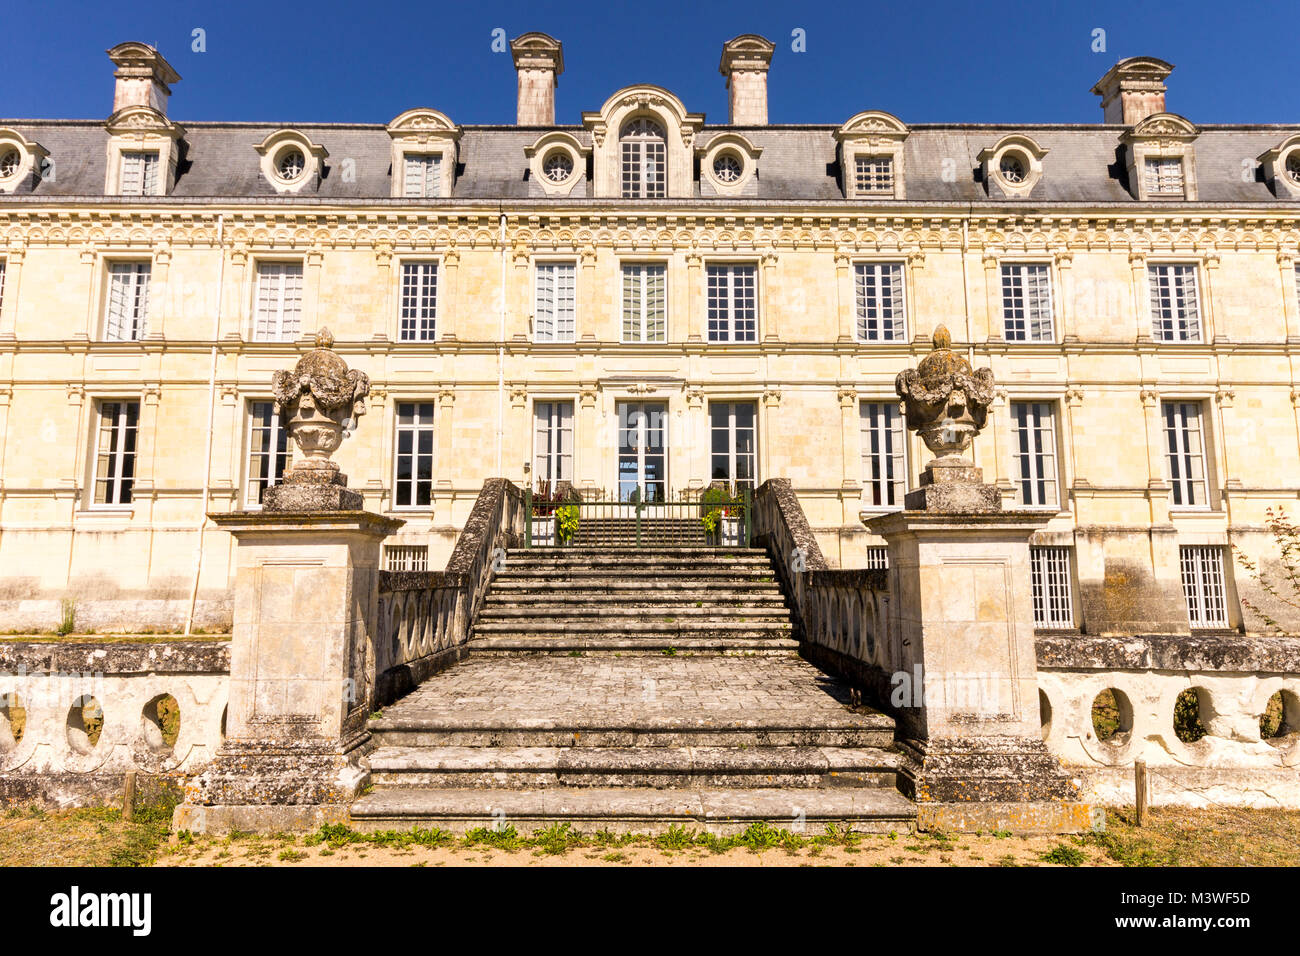 Das Château de Valençay, eine Residenz des d'Estampes und Talleyrand-Périgord Familien in der Ortschaft Valençay, Departement Indre, Frankreich Stockfoto